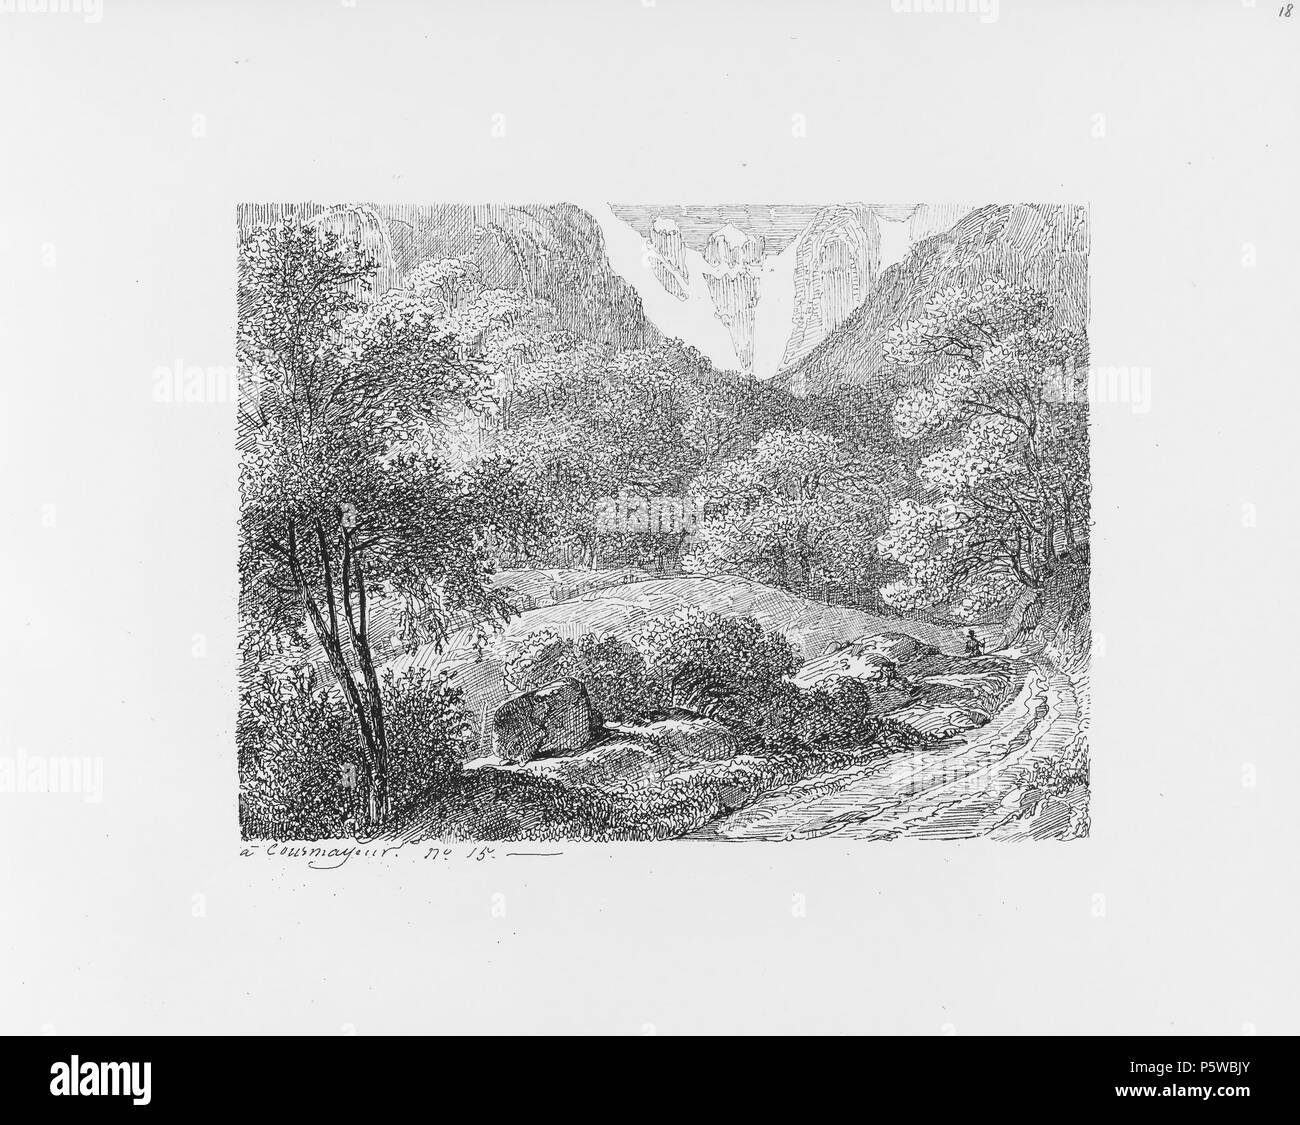 322 CH-NB-Voyage autour du Mont-Blanc dans les vallées d'Hérens de Zermatt et au Grimsel 1843-nbdig-19161-017 Stock Photo